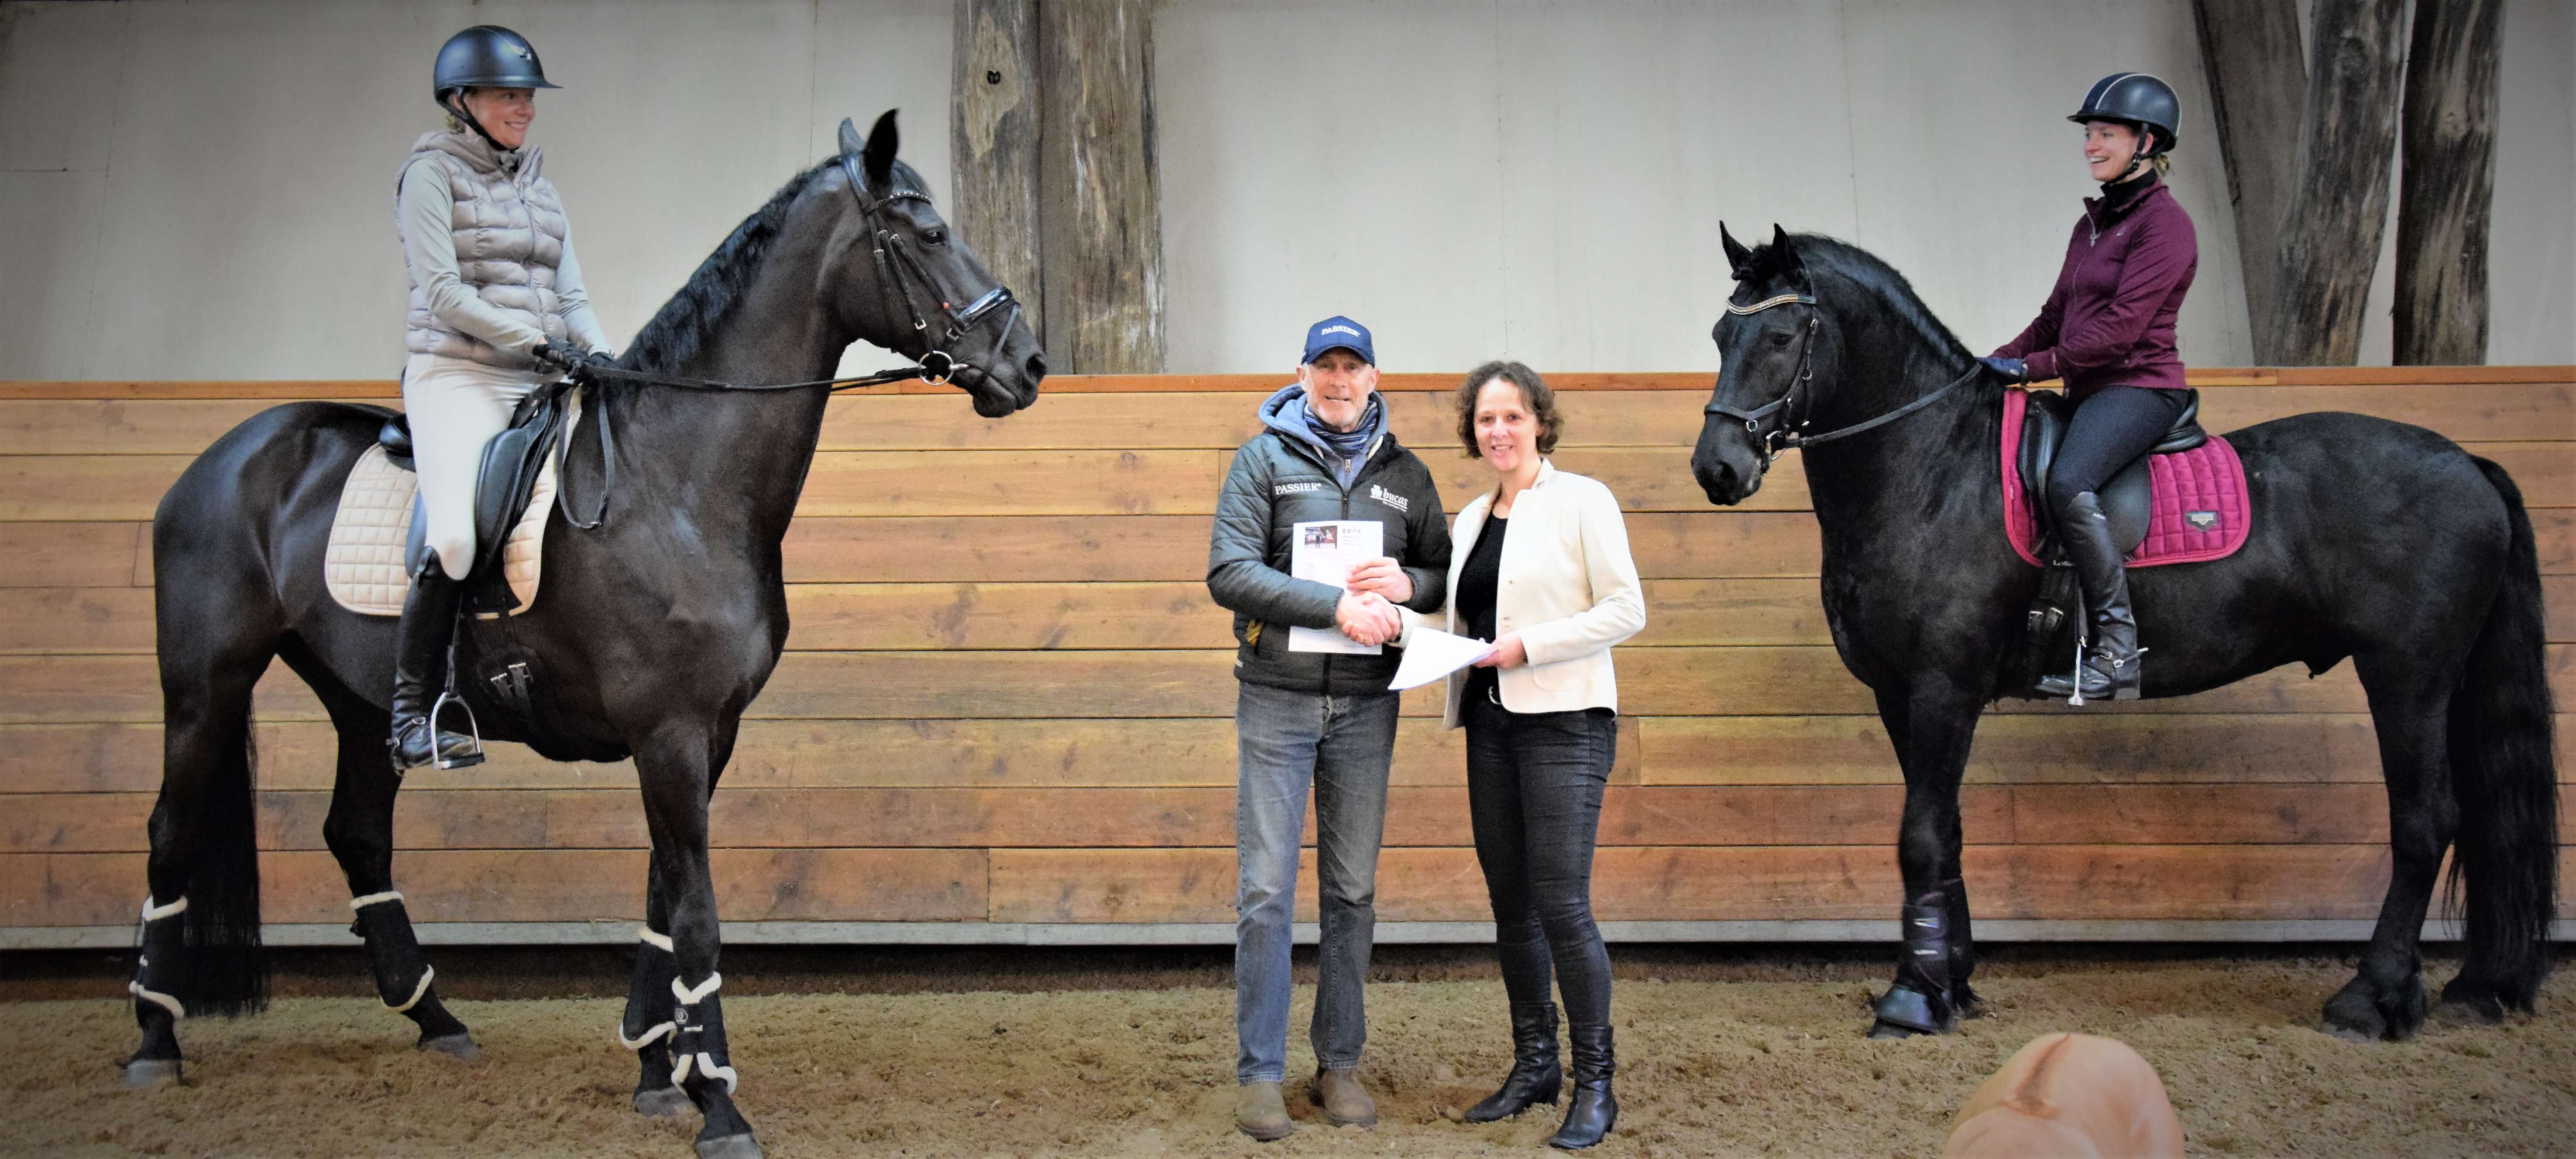 De mbo-opleiding Paardensport van Zone.college gaat samenwerking aan met bondscoach Rien van der Schaft